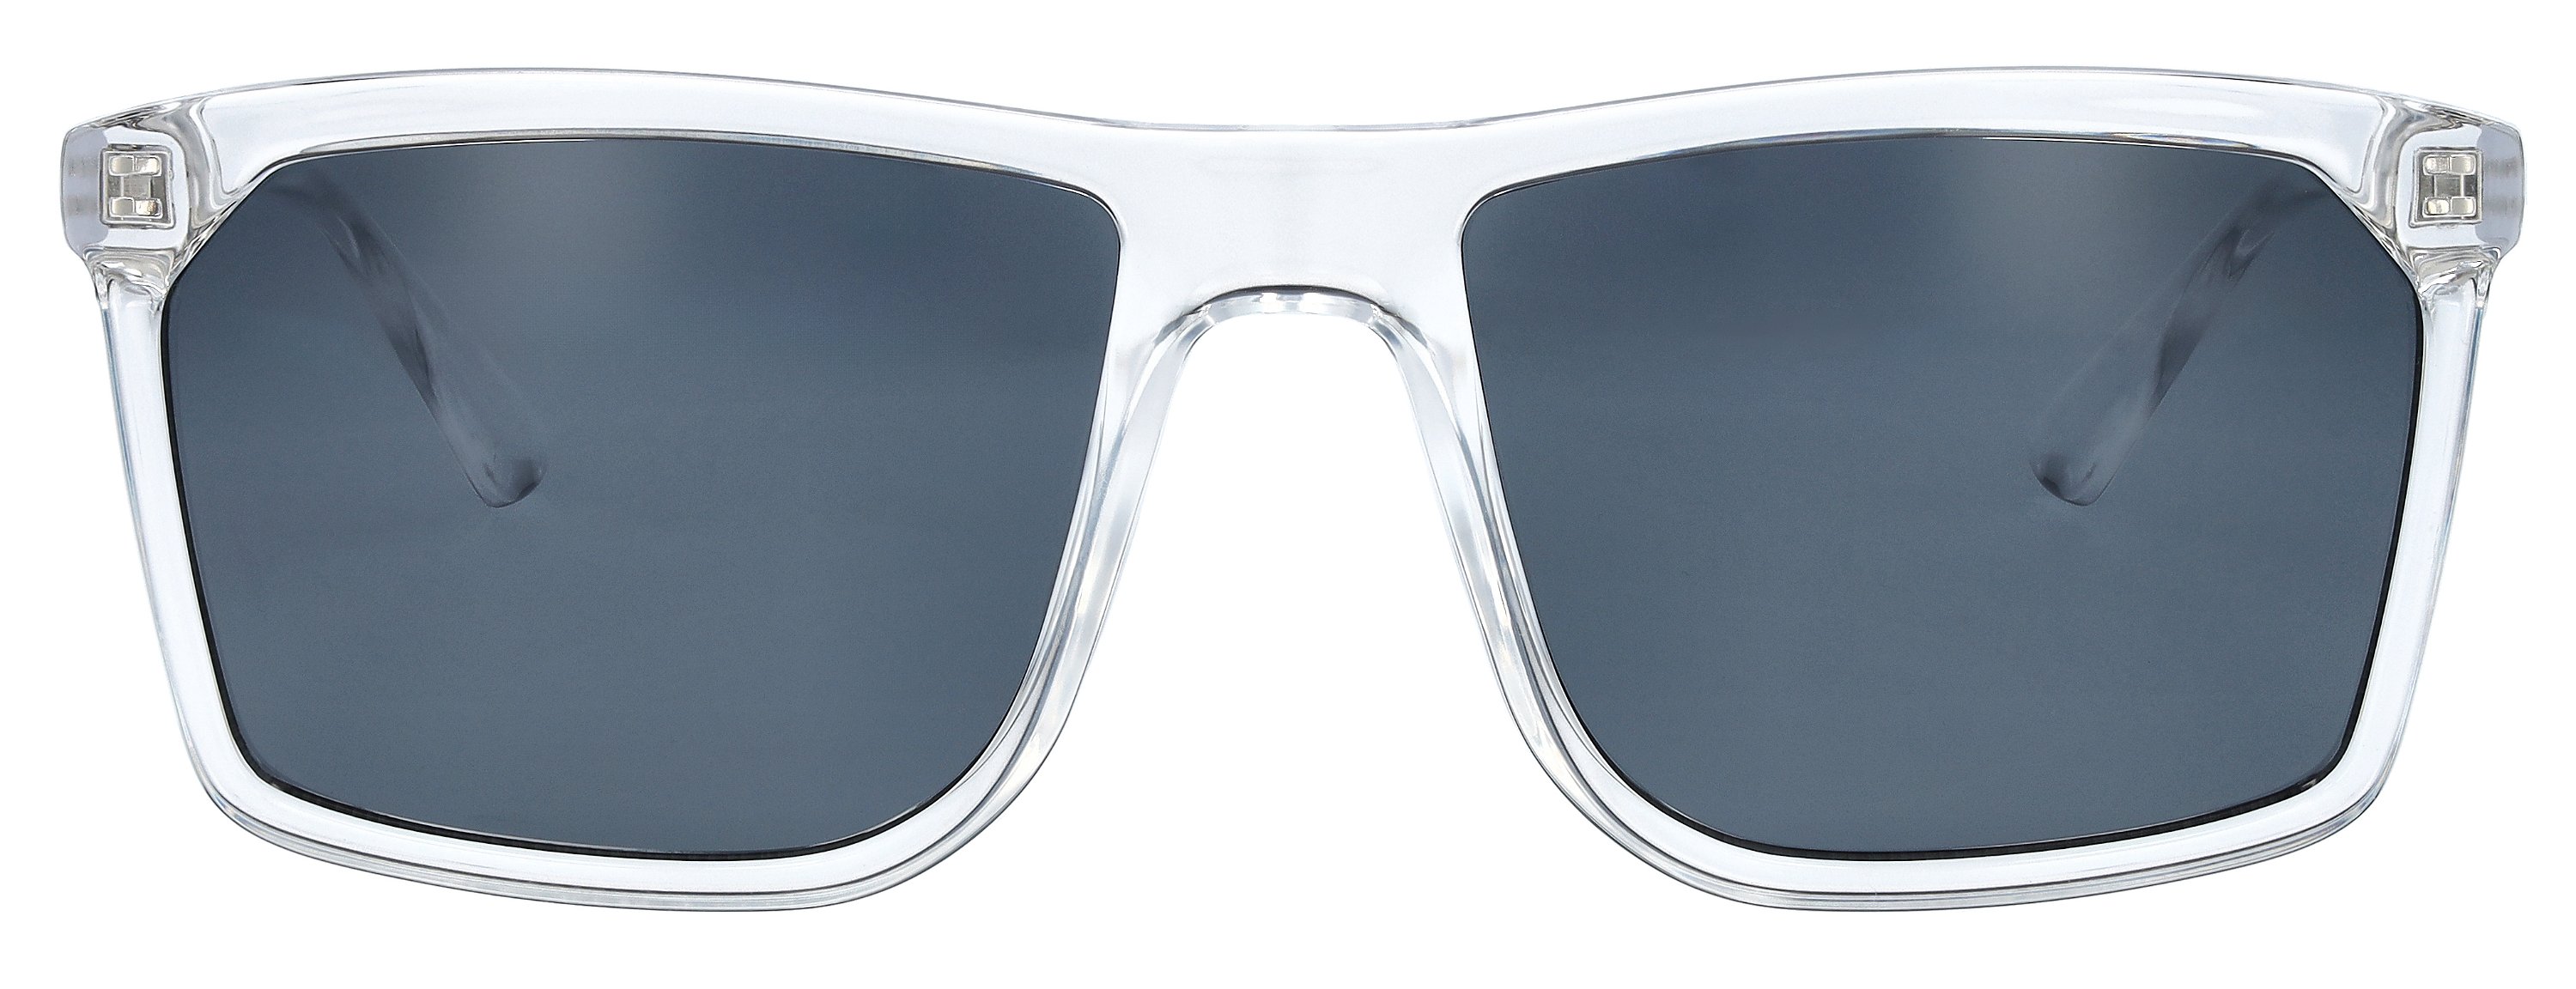 Das Bild zeigt die Sonnenbrille 721251 von der Marke Abele Optik in transparent.